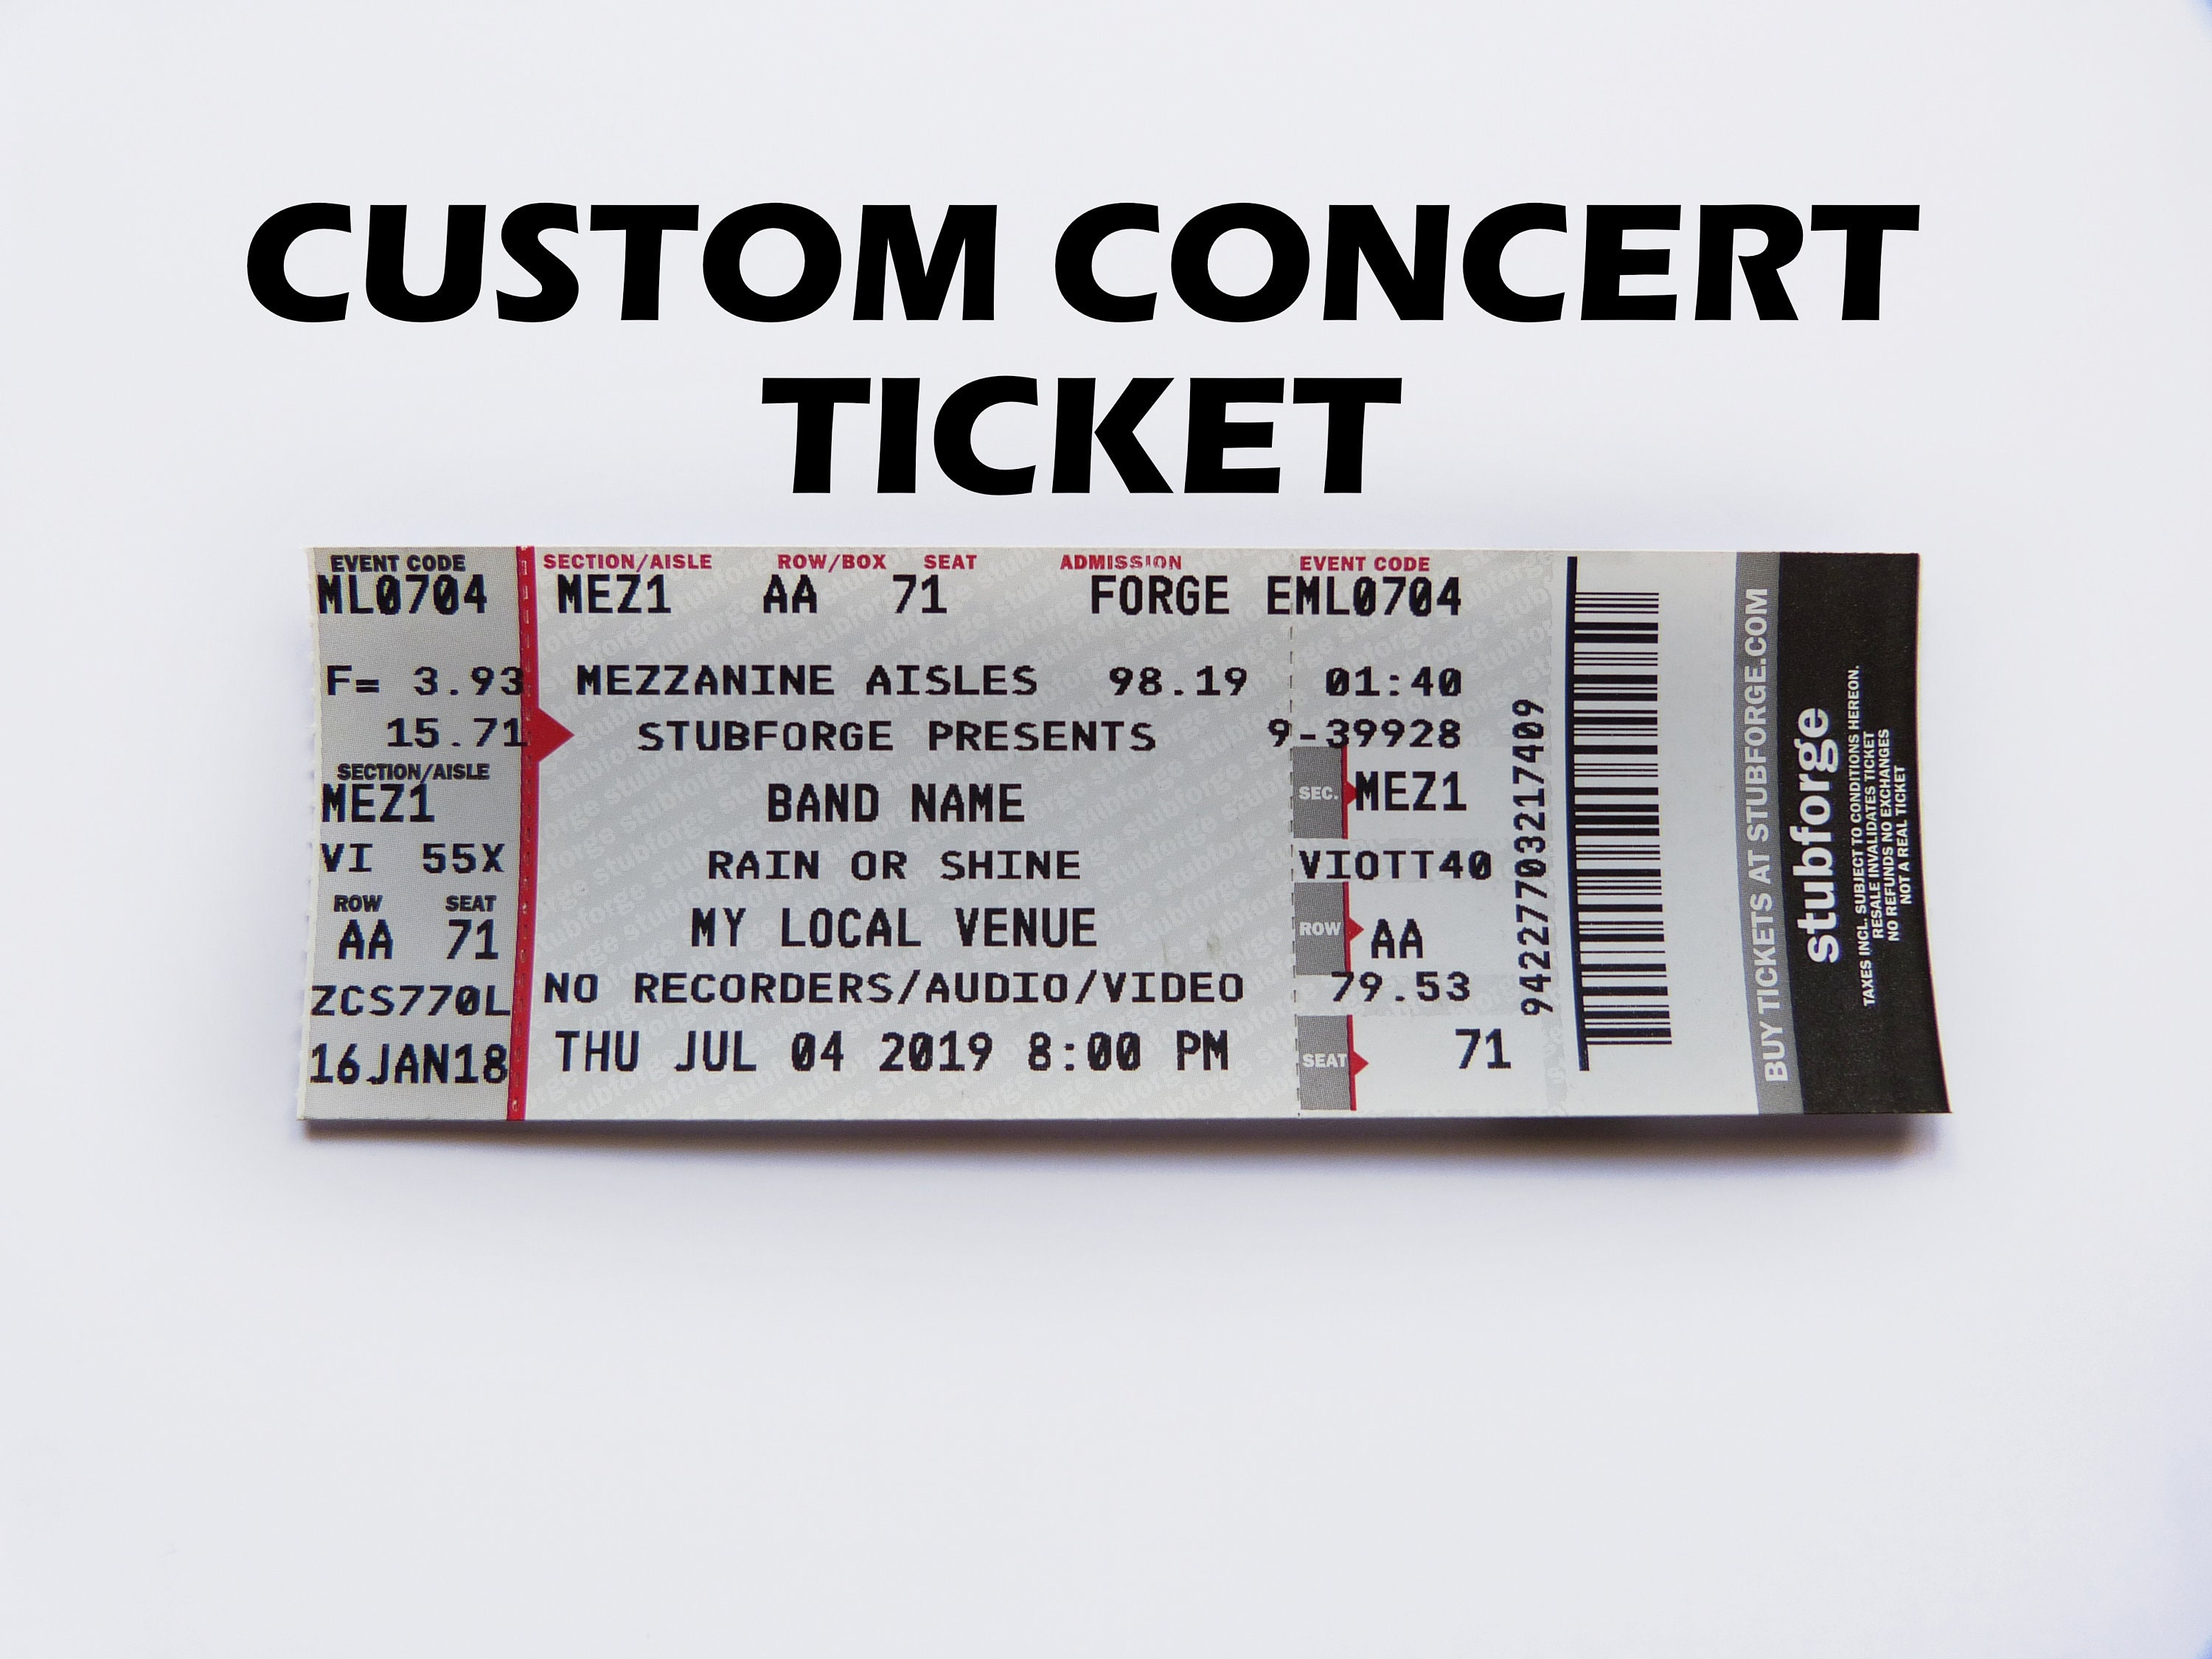 Full ticket. Concert ticket. Custom ticket. Ticket in Ticketmaster.